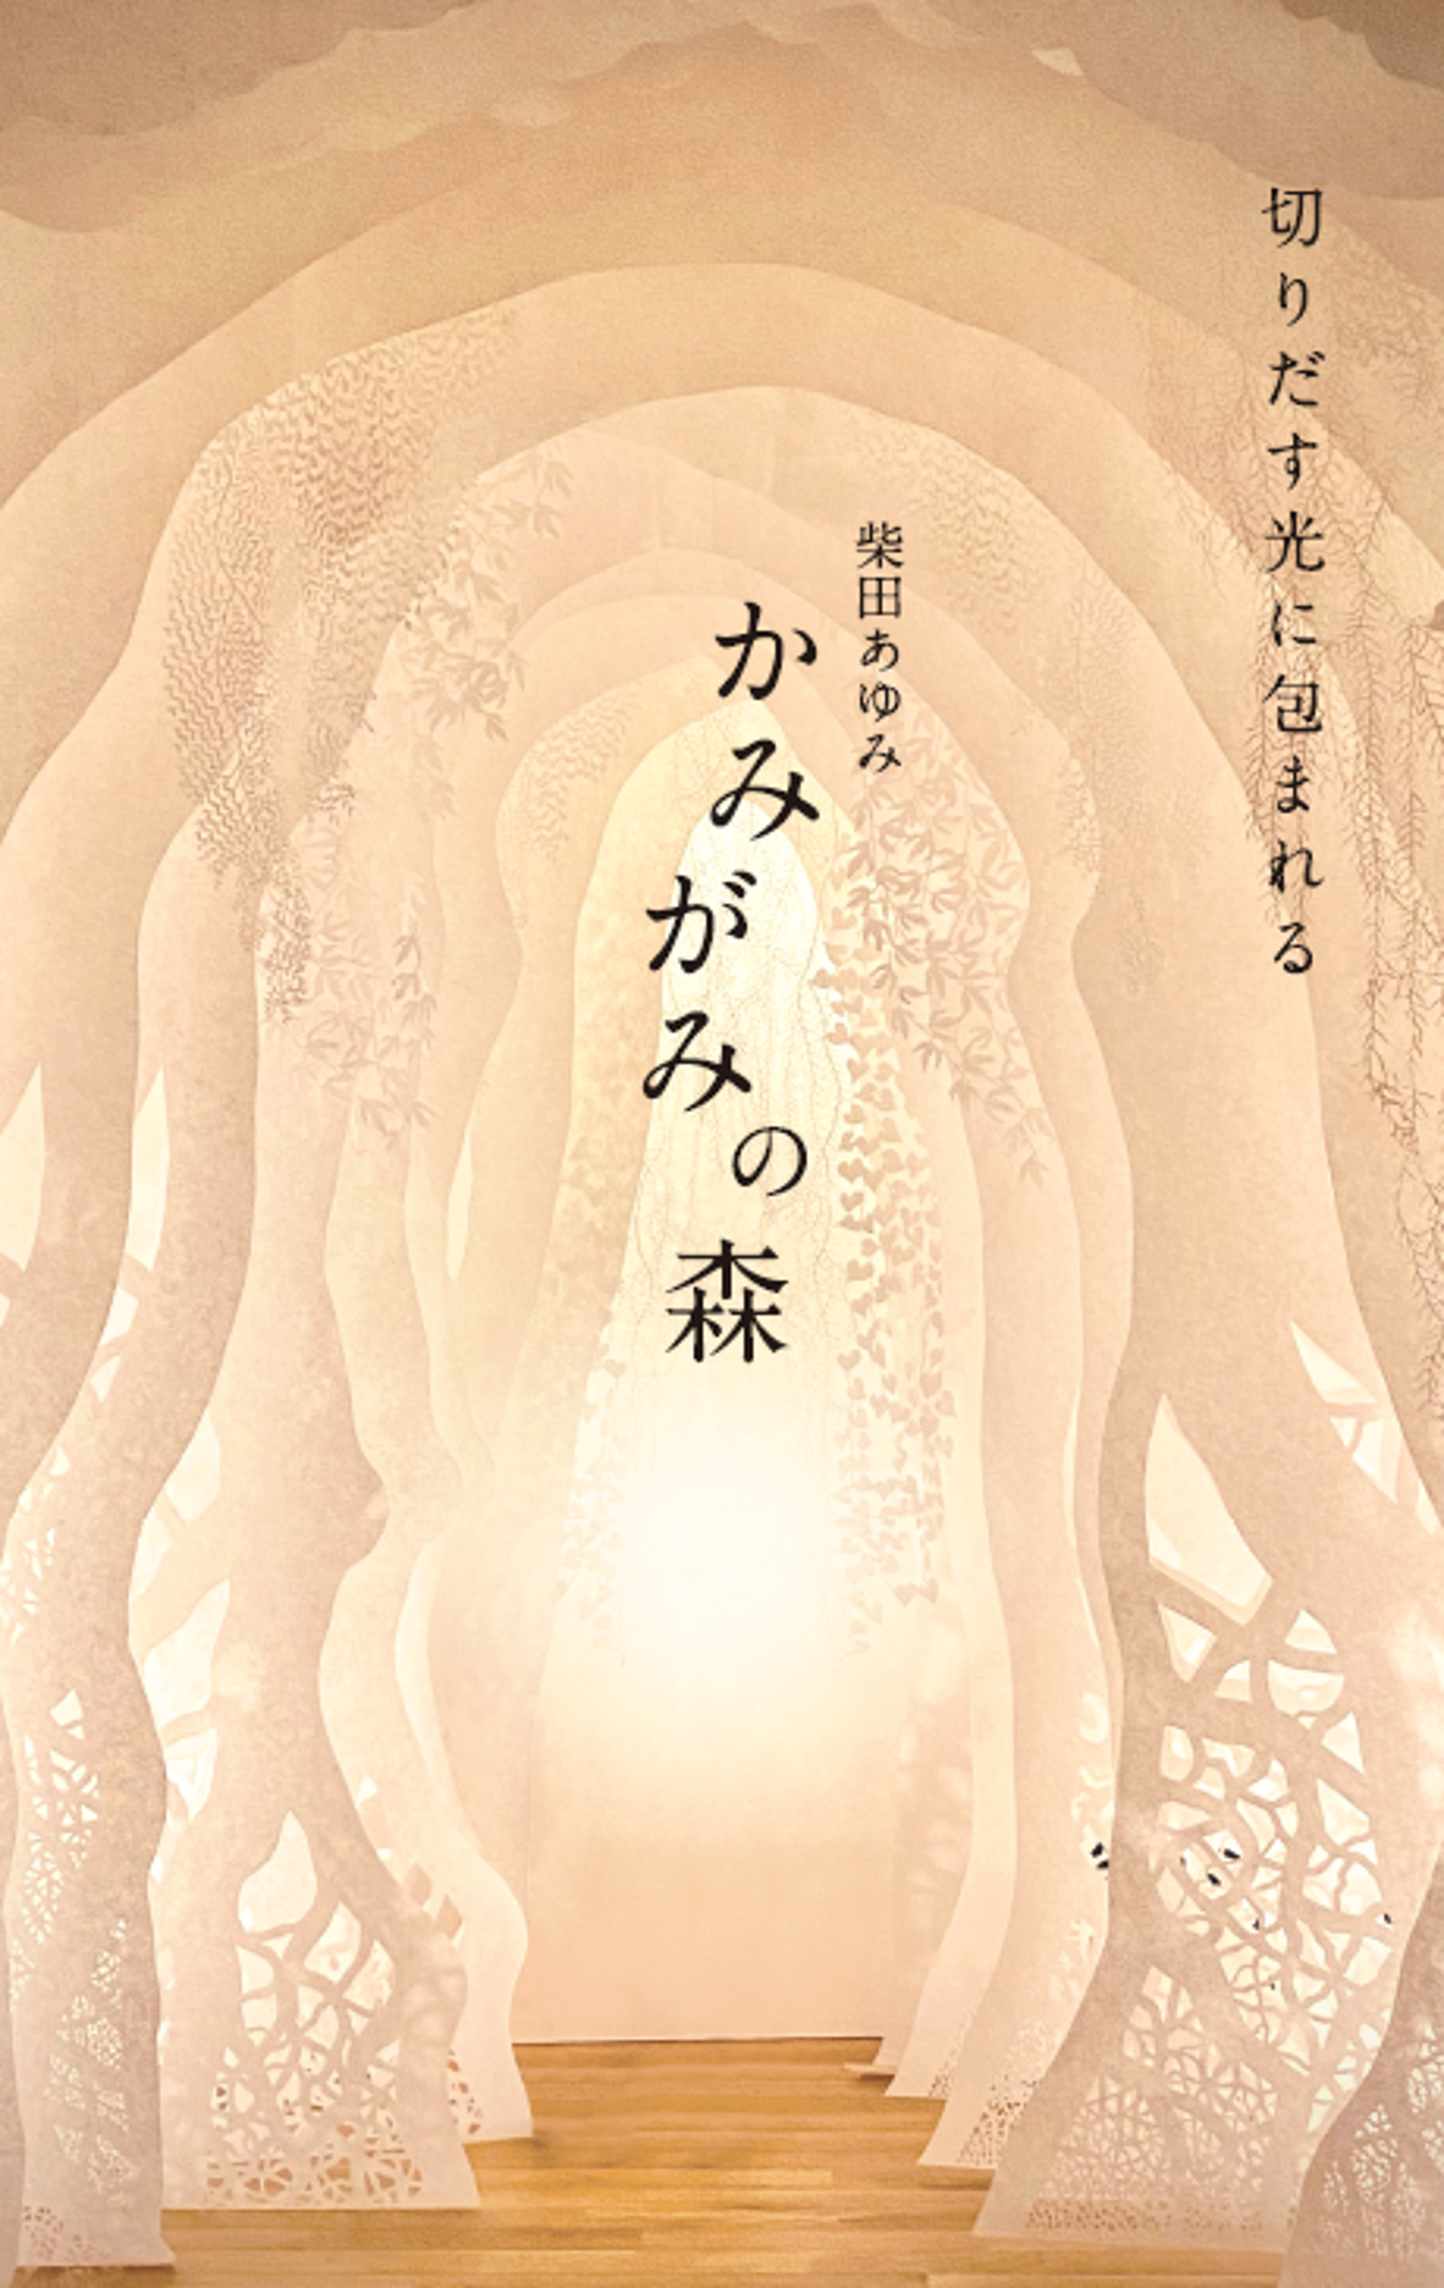 柴田あゆみ「かみがみの森」切りだす光に包まれる 切り絵の展覧会イメージ画像1